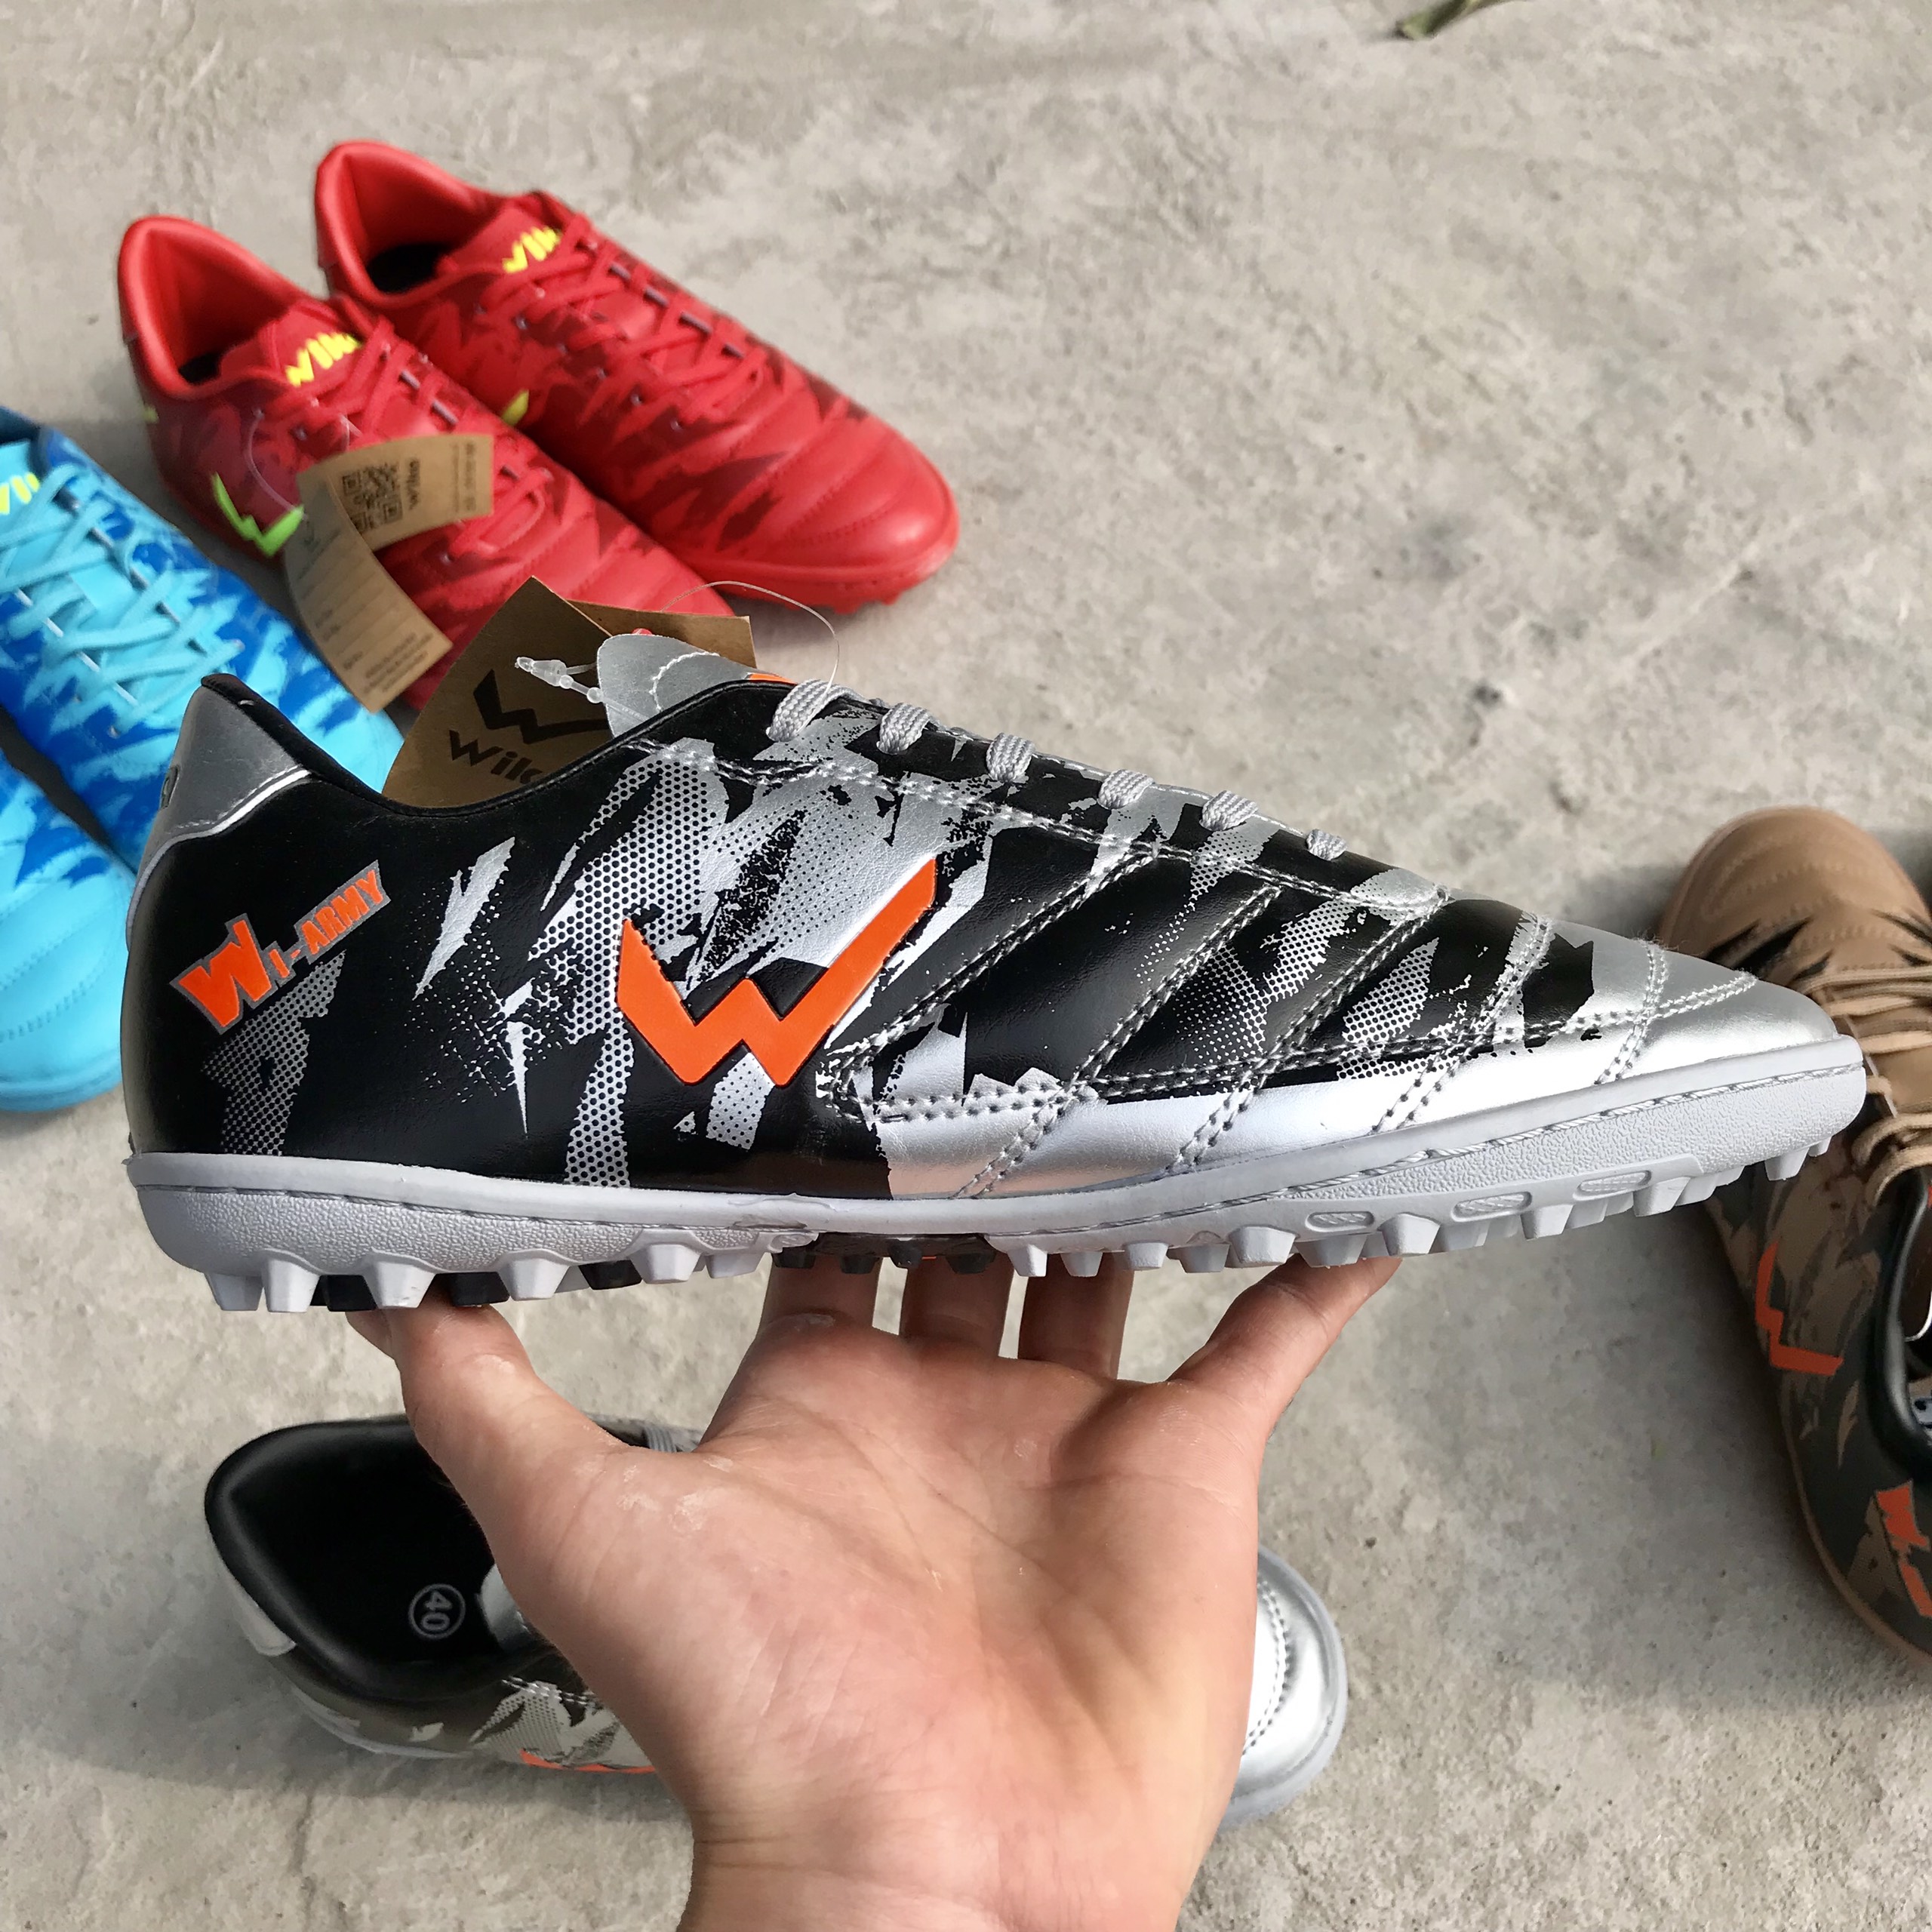 Giày đá bóng thể thao nam Wika Army Colorful đế mềm, giày đá banh cỏ nhân tạo rẻ đẹp